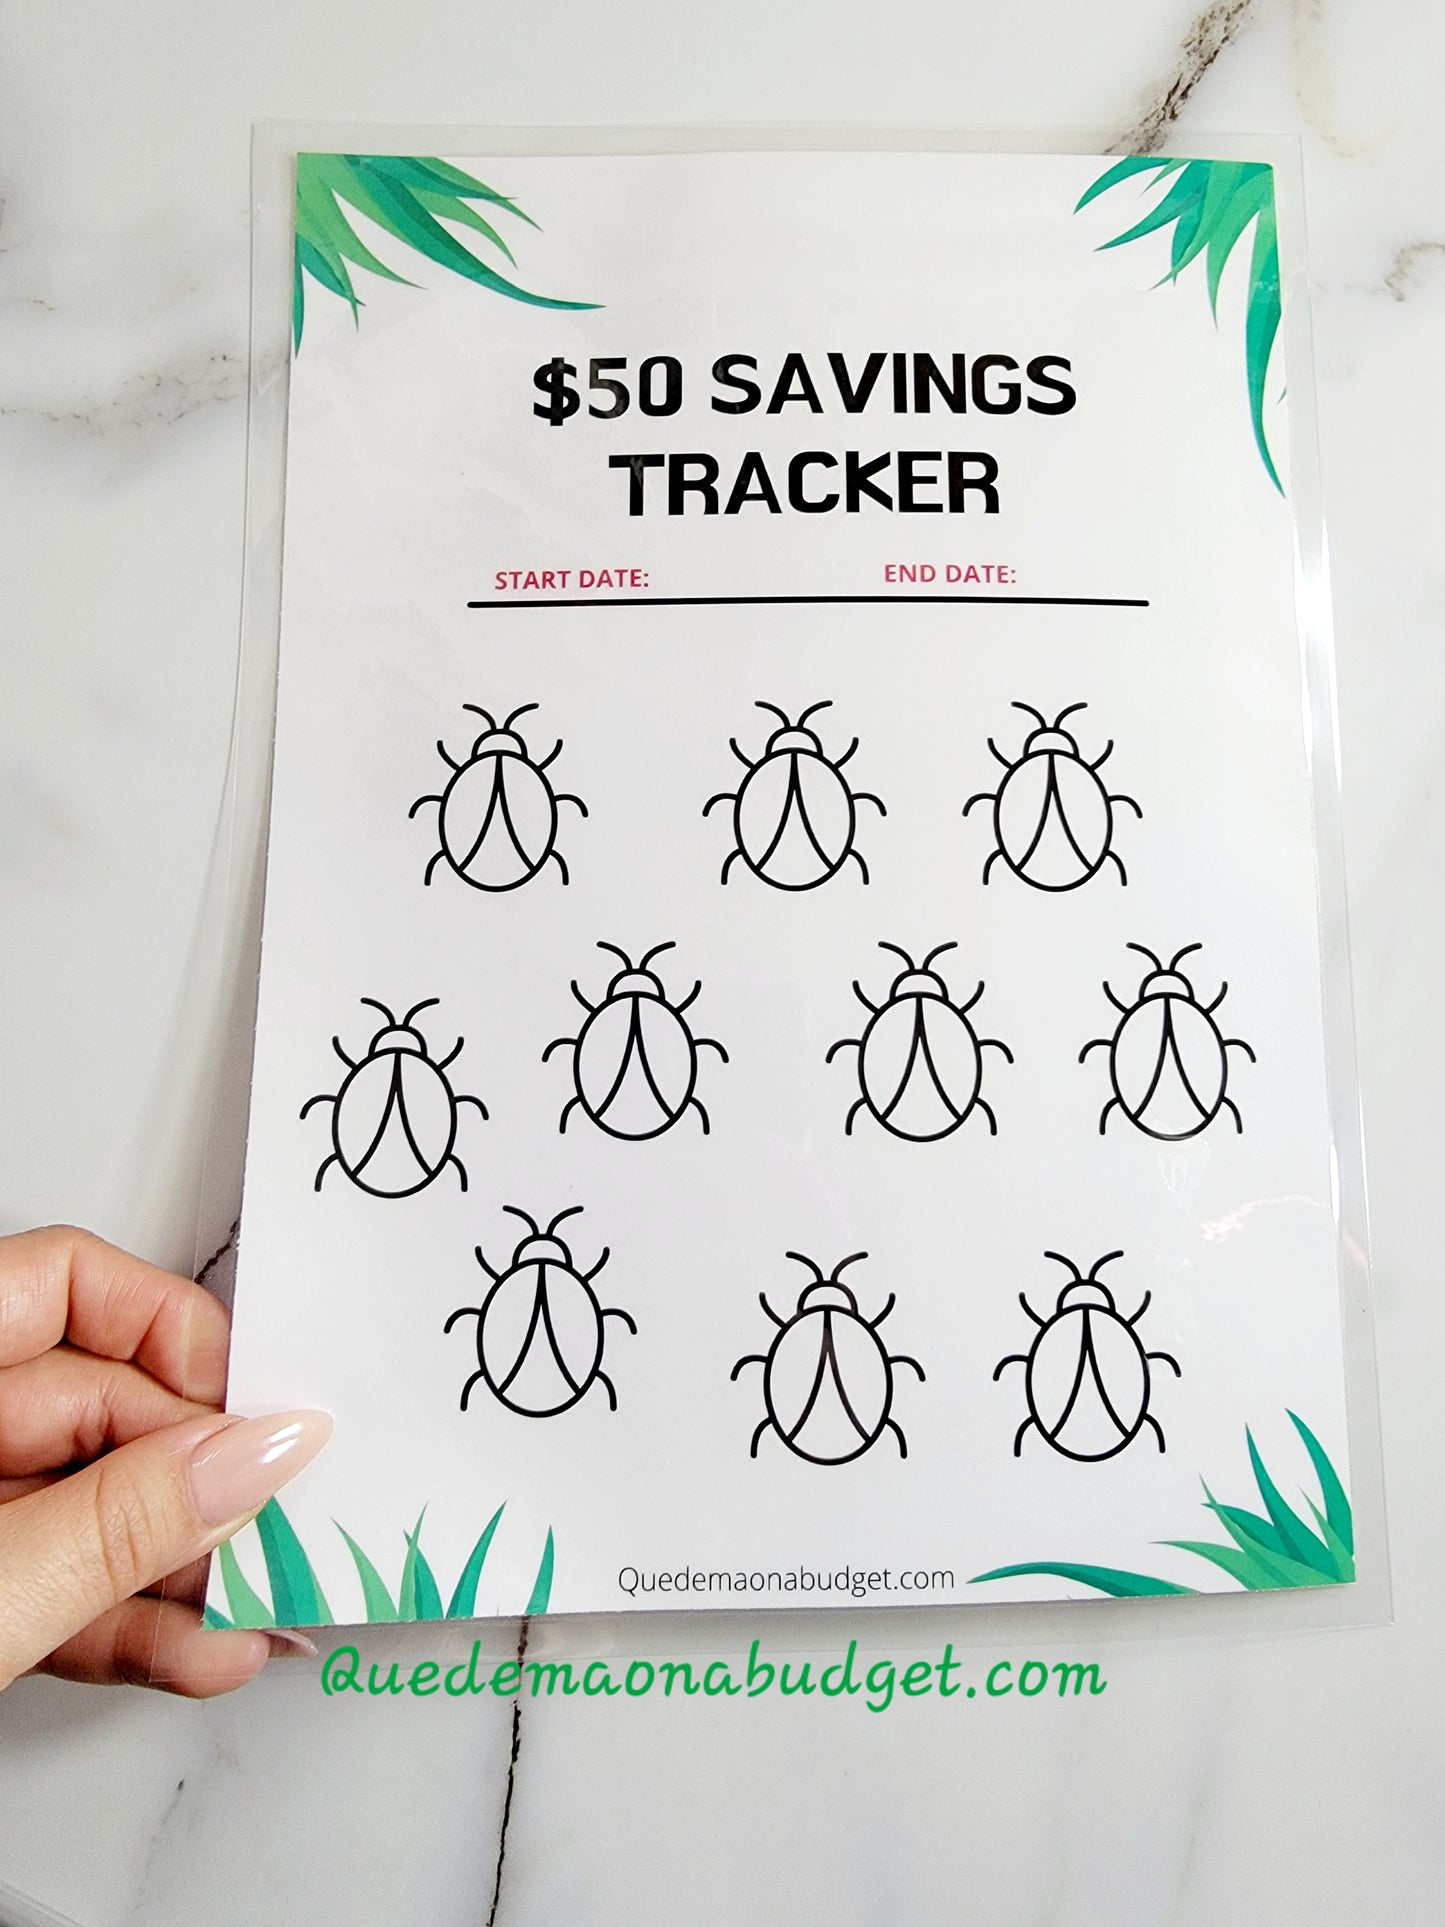 Bugged Out! $50 Savings Kids Starter Kit! 7 Piece Bundle!